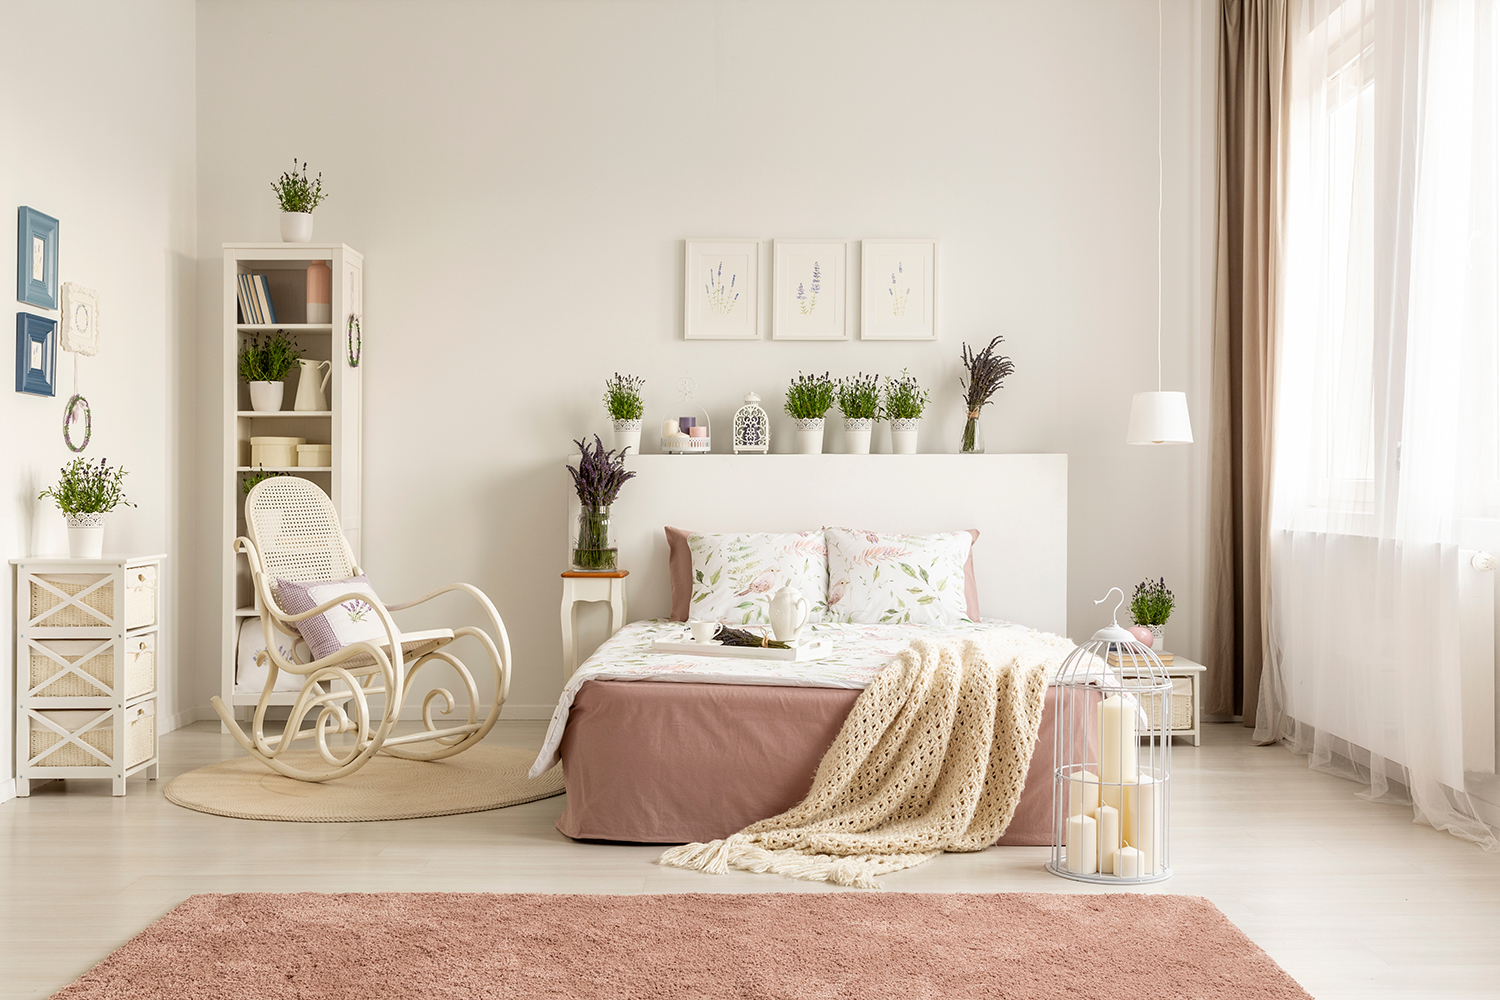 Phòng ngủ hồng kết hợp hài hòa với màu xanh của cây cỏ